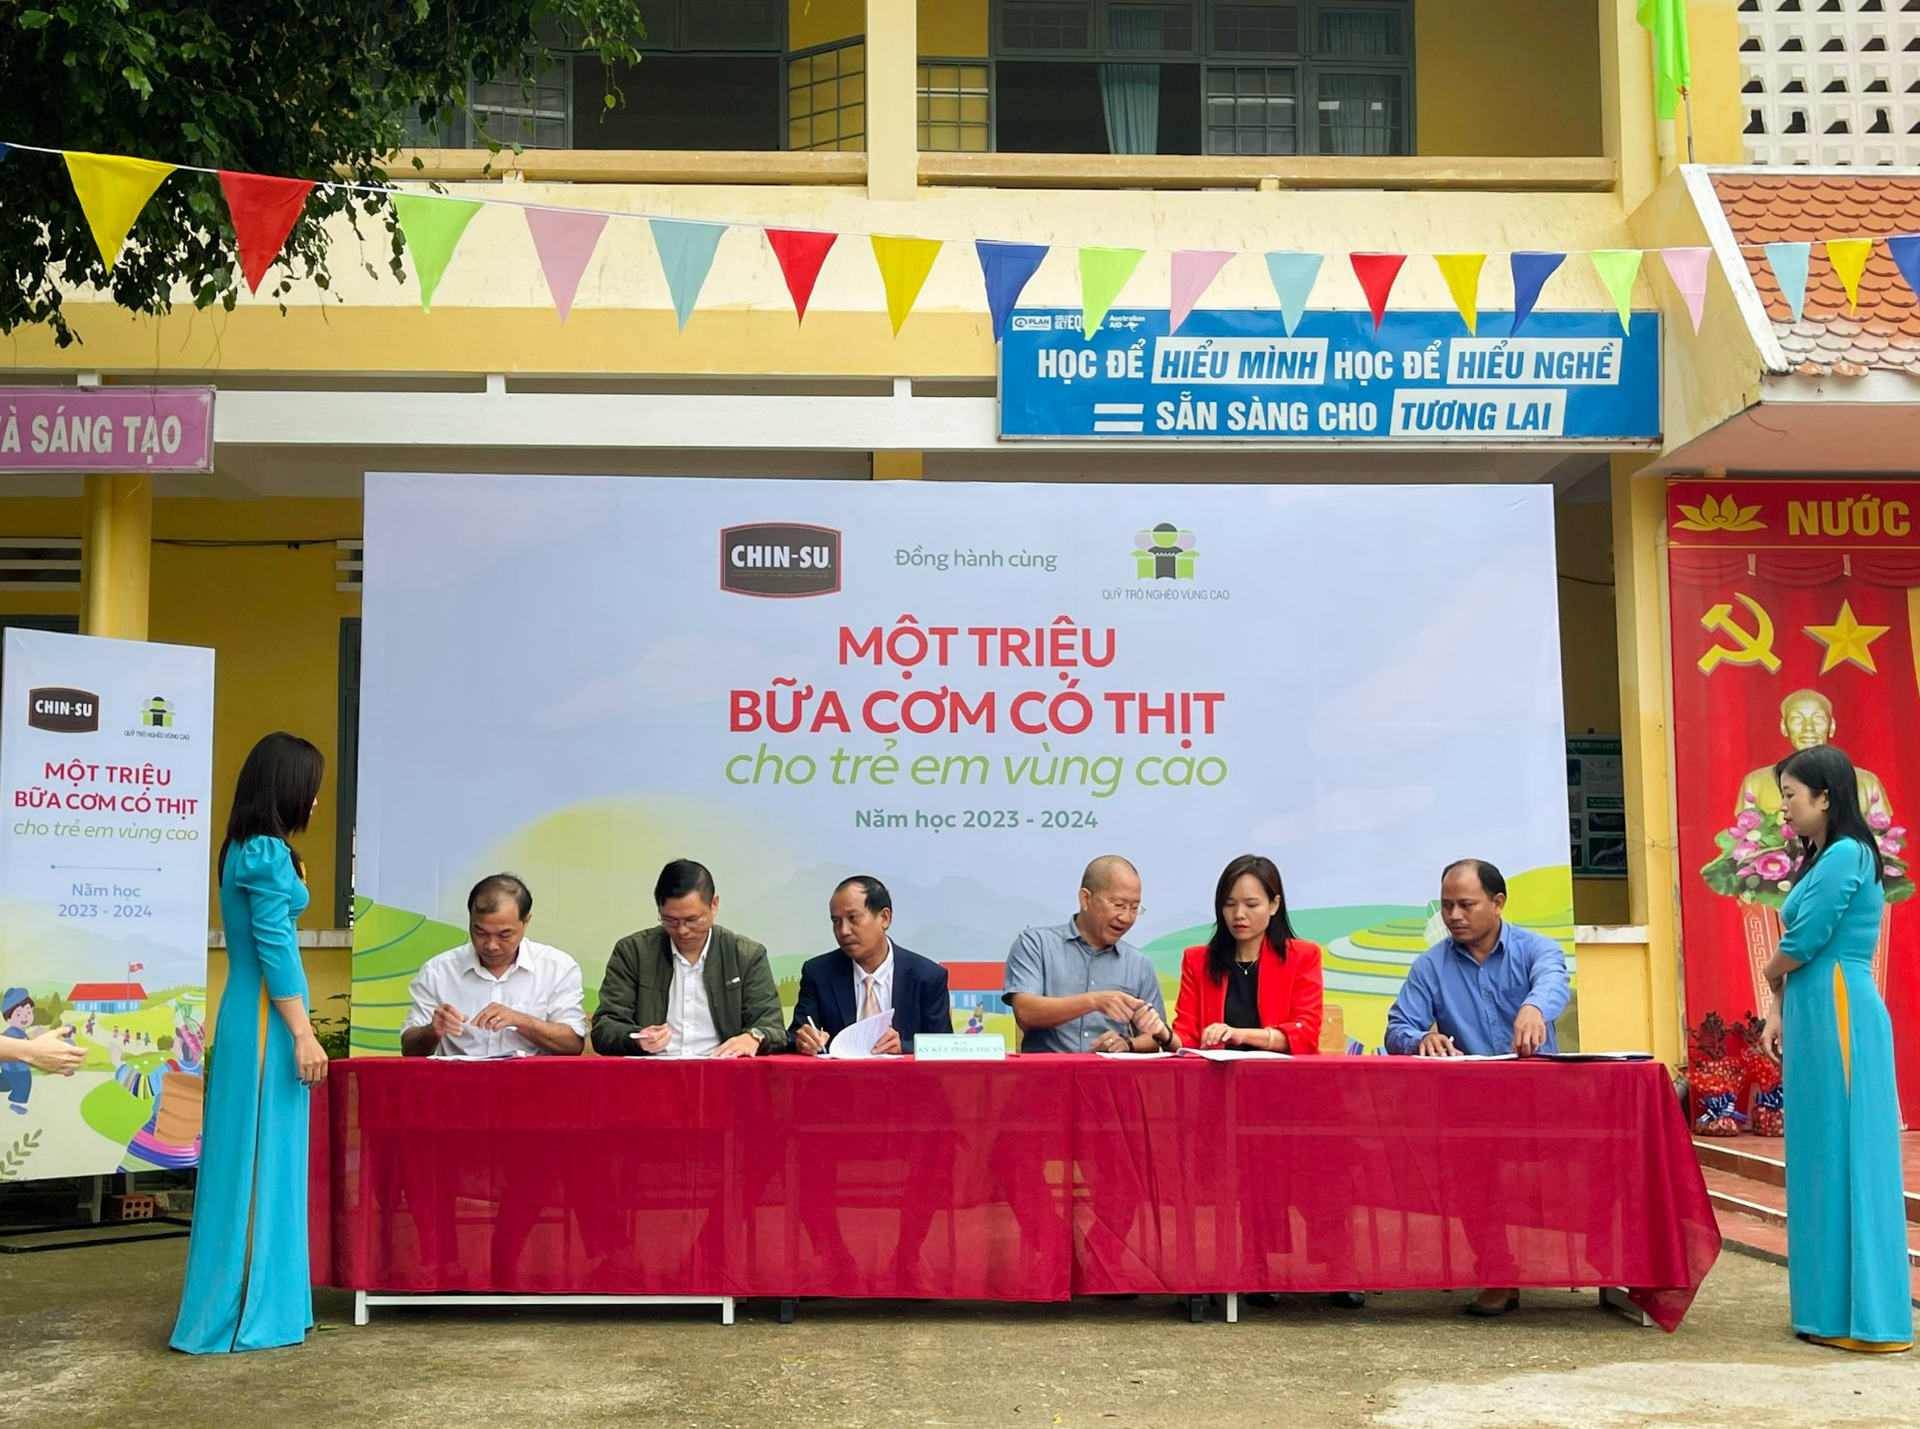 Ký kết thỏa thuận hỗ trợ giữa Chương trình với đại diện trường, phòng giáo dục, xã Măng Cành, Hội phụ huynh học sinh tại trường THCS Măng Cành.